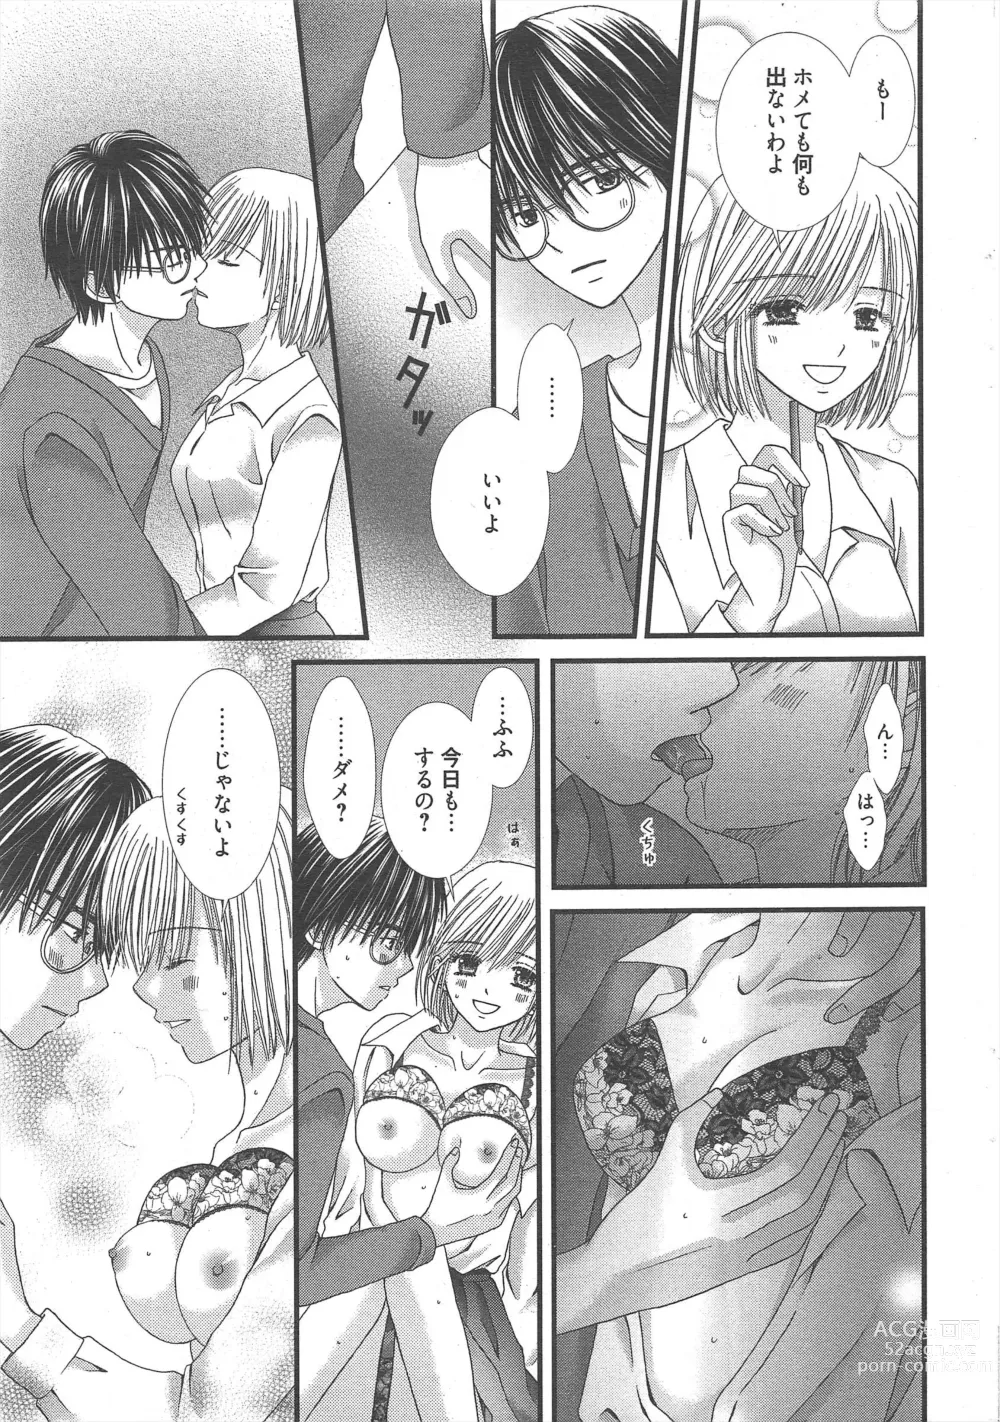 Page 15 of manga Manga Bangaichi 2012-12